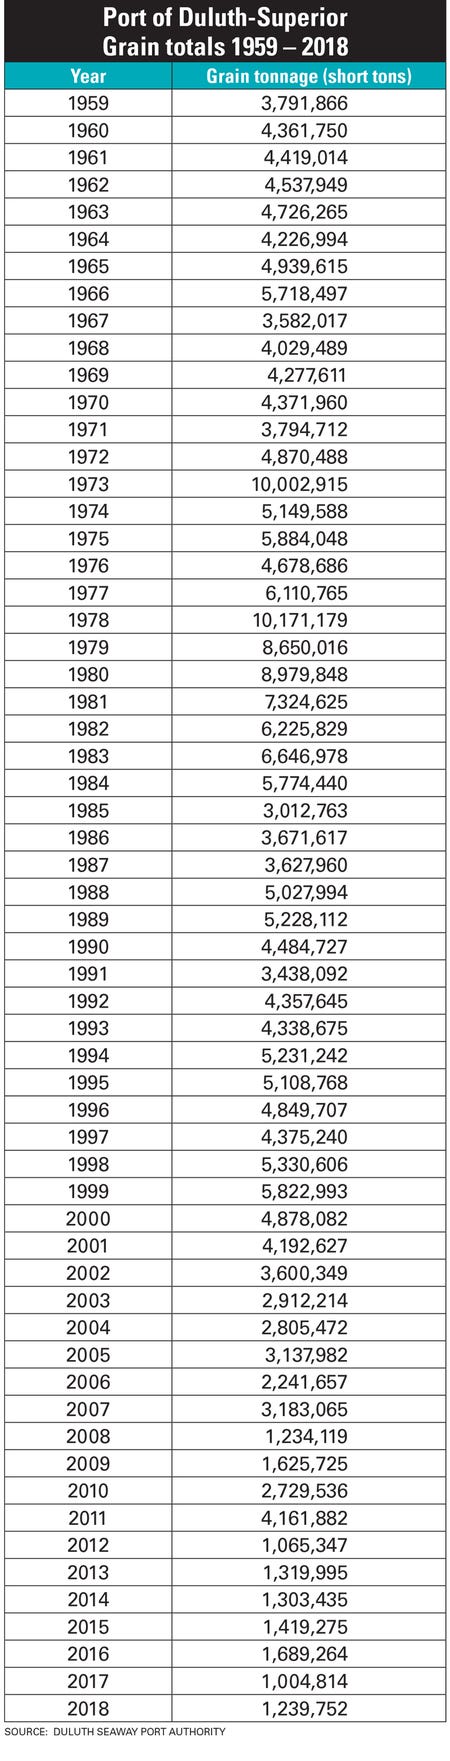  Port of Duluth-Superior grain totals 1959-2018